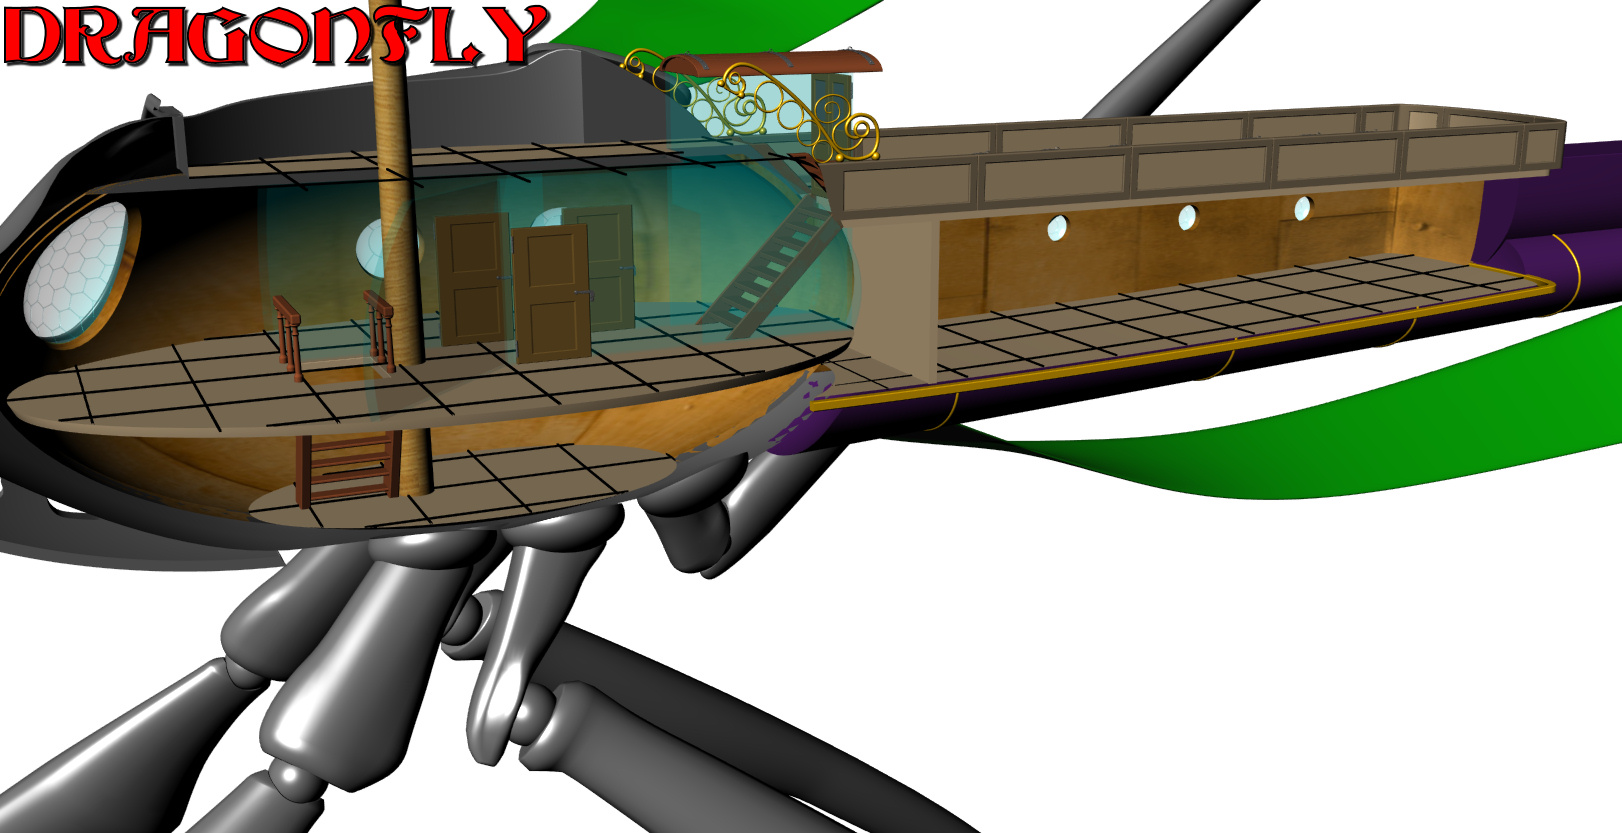 dragonfly_deckplans4.jpg